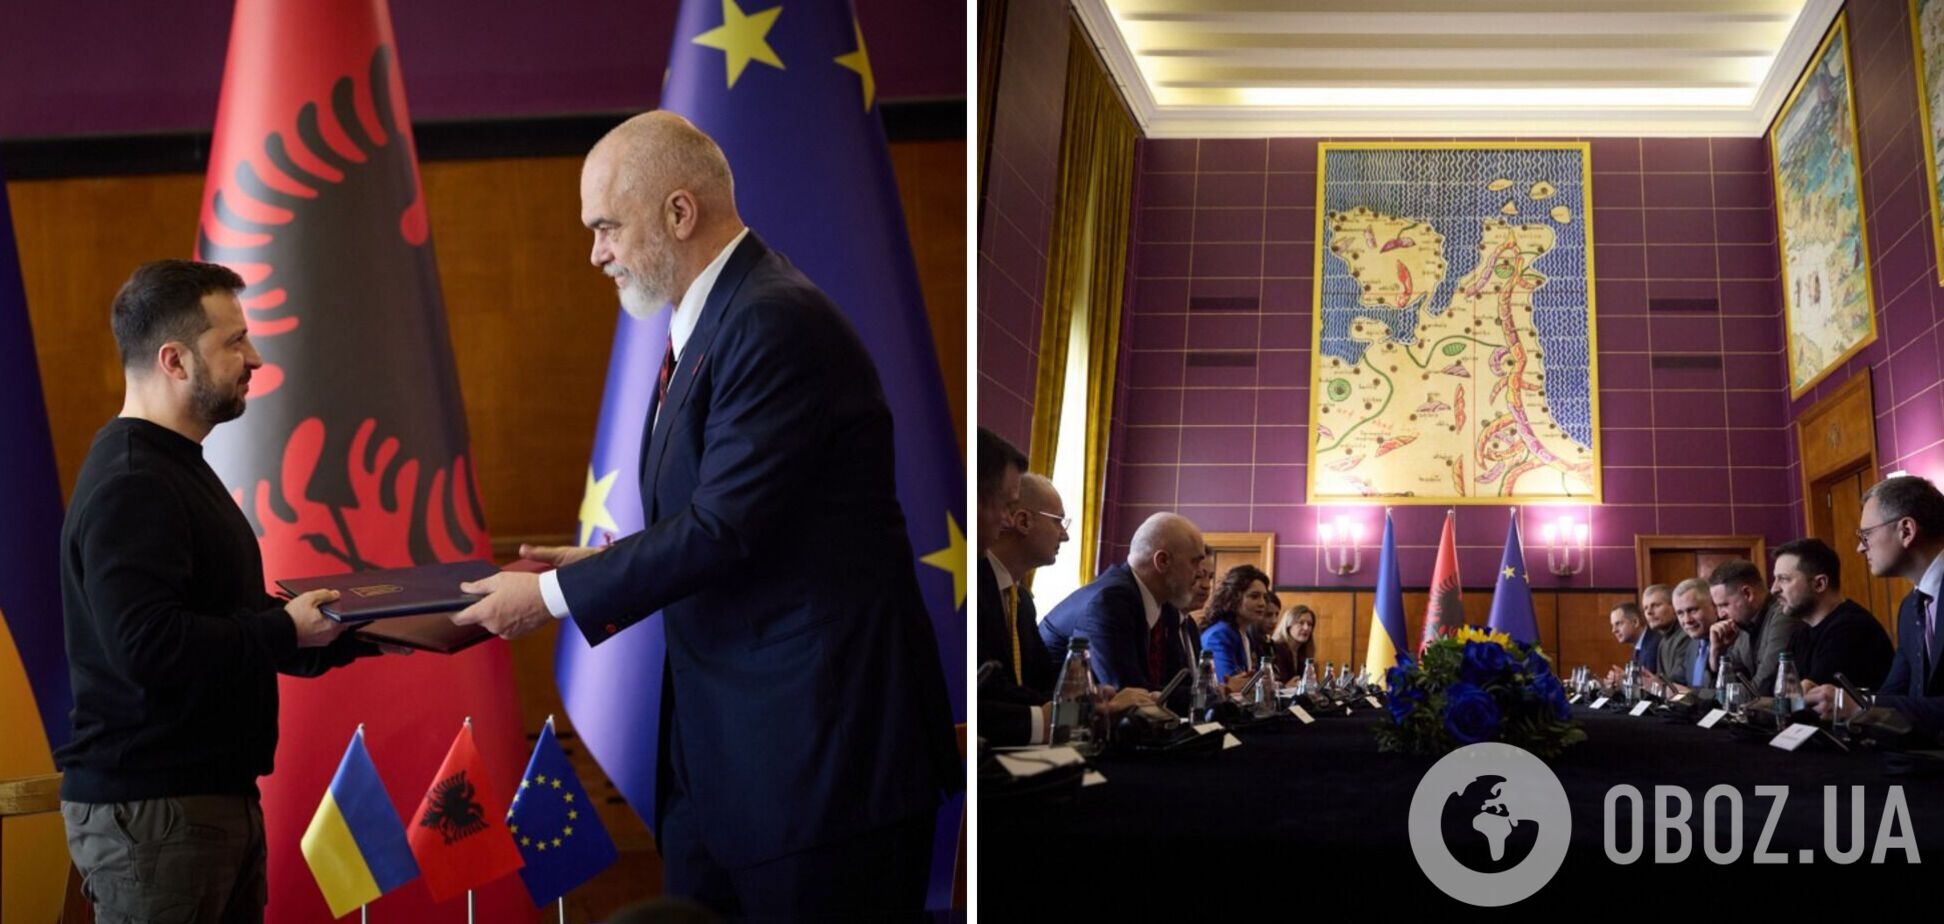 Зеленский встретился с премьером Албании и выступил на саммите 'Украина – Юго-Восточная Европа'. Видео и все подробности